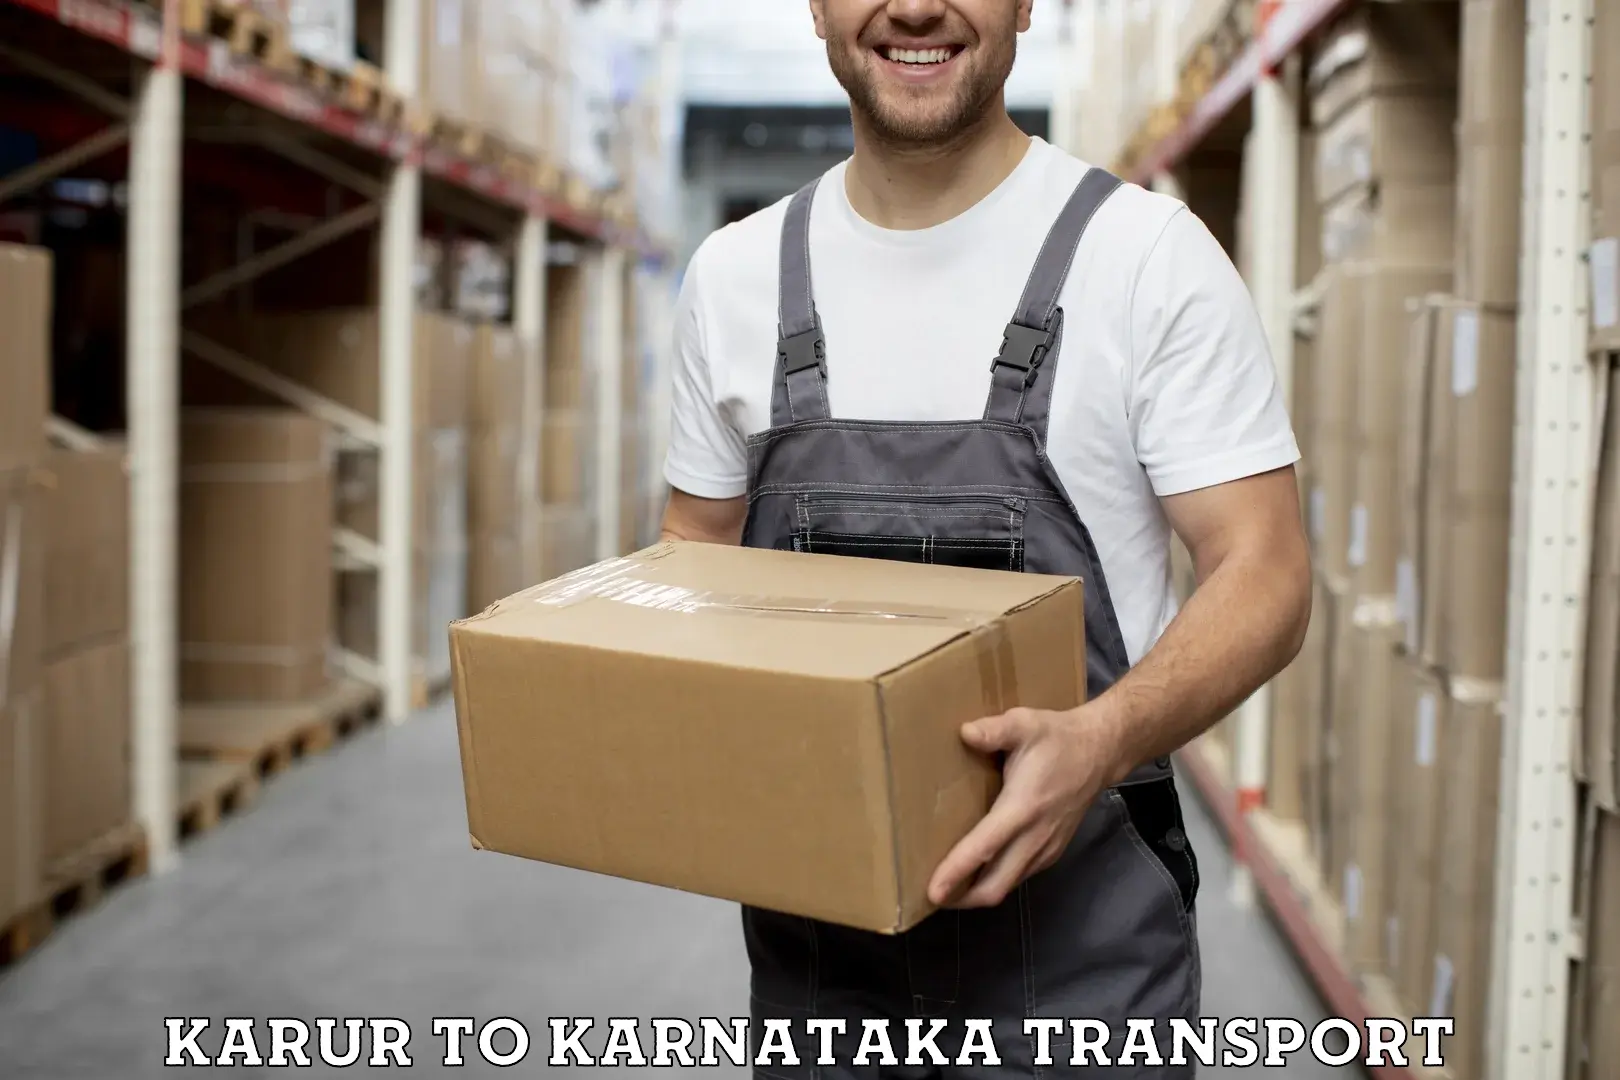 Two wheeler parcel service Karur to Toranagallu